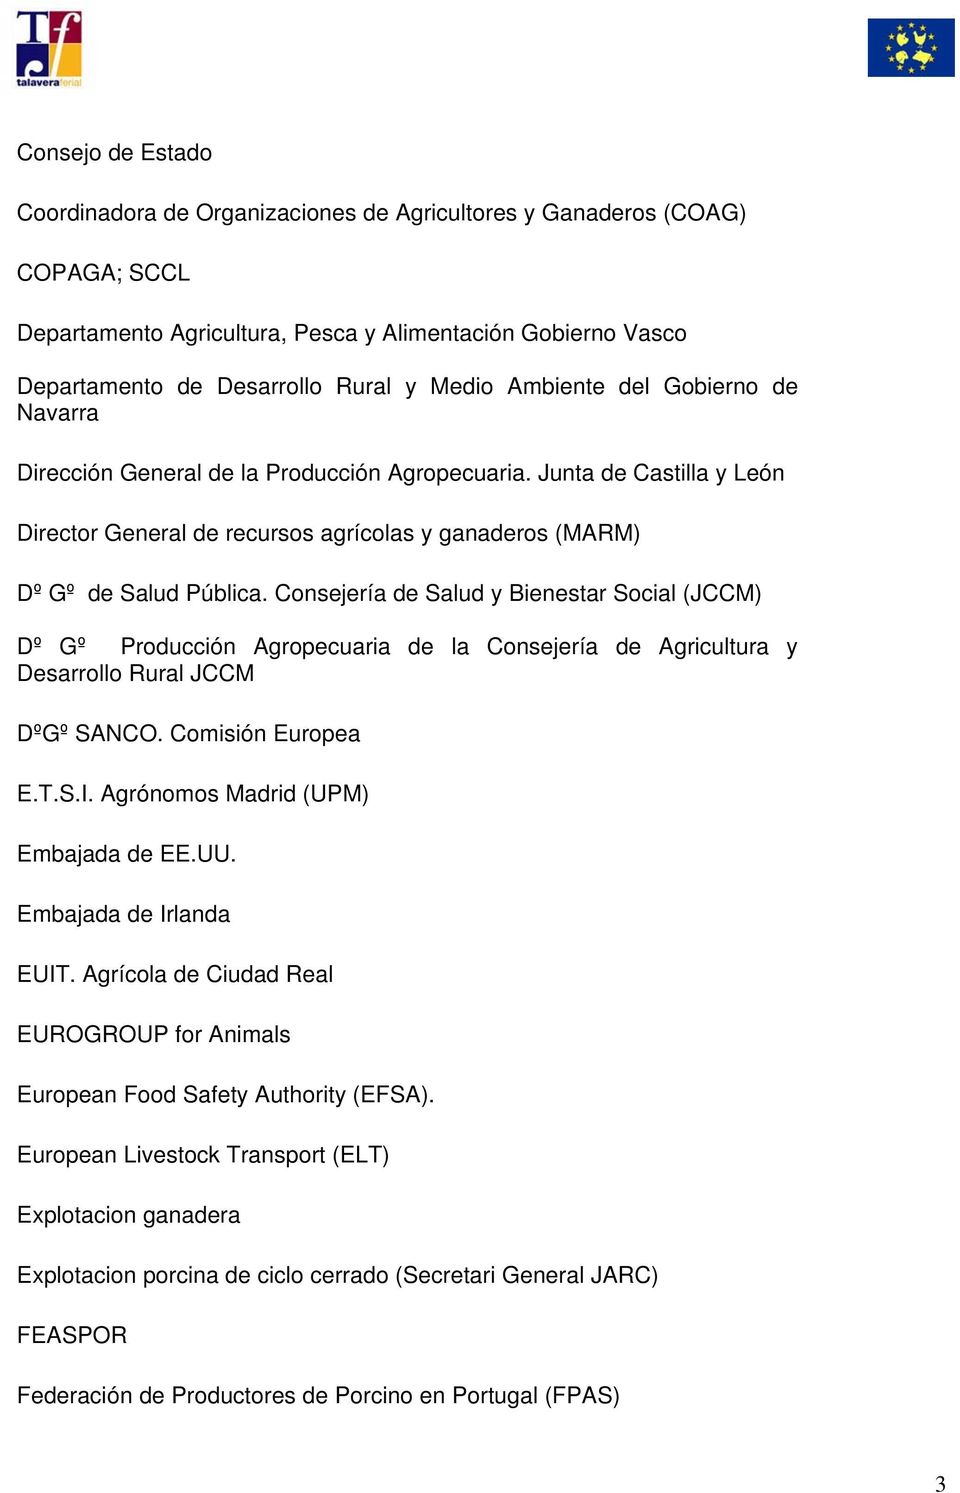 Consejería de Salud y Bienestar Social (JCCM) Dº Gº Producción Agropecuaria de la Consejería de Agricultura y Desarrollo Rural JCCM DºGº SANCO. Comisión Europea E.T.S.I.